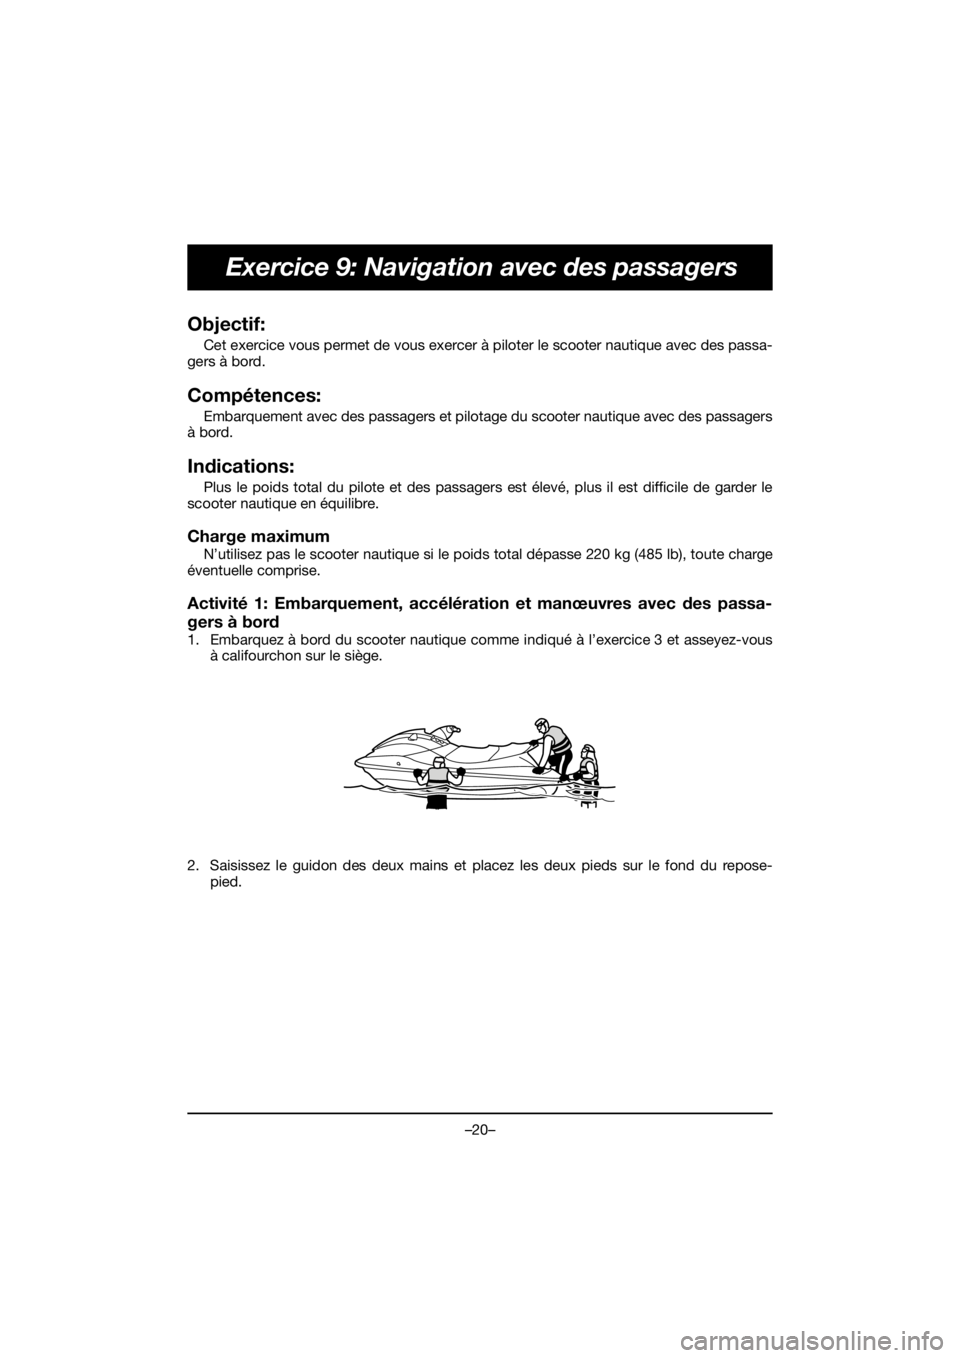 YAMAHA FJR1300 2019  ΟΔΗΓΌΣ ΧΡΉΣΗΣ (in Greek) –20–
Exercice 9: Navigation avec des passagers
Objectif: 
Cet exercice vous permet de vous exercer à piloter le scooter nautique avec des passa-
gers à bord.
Compétences: 
Embarquement avec des